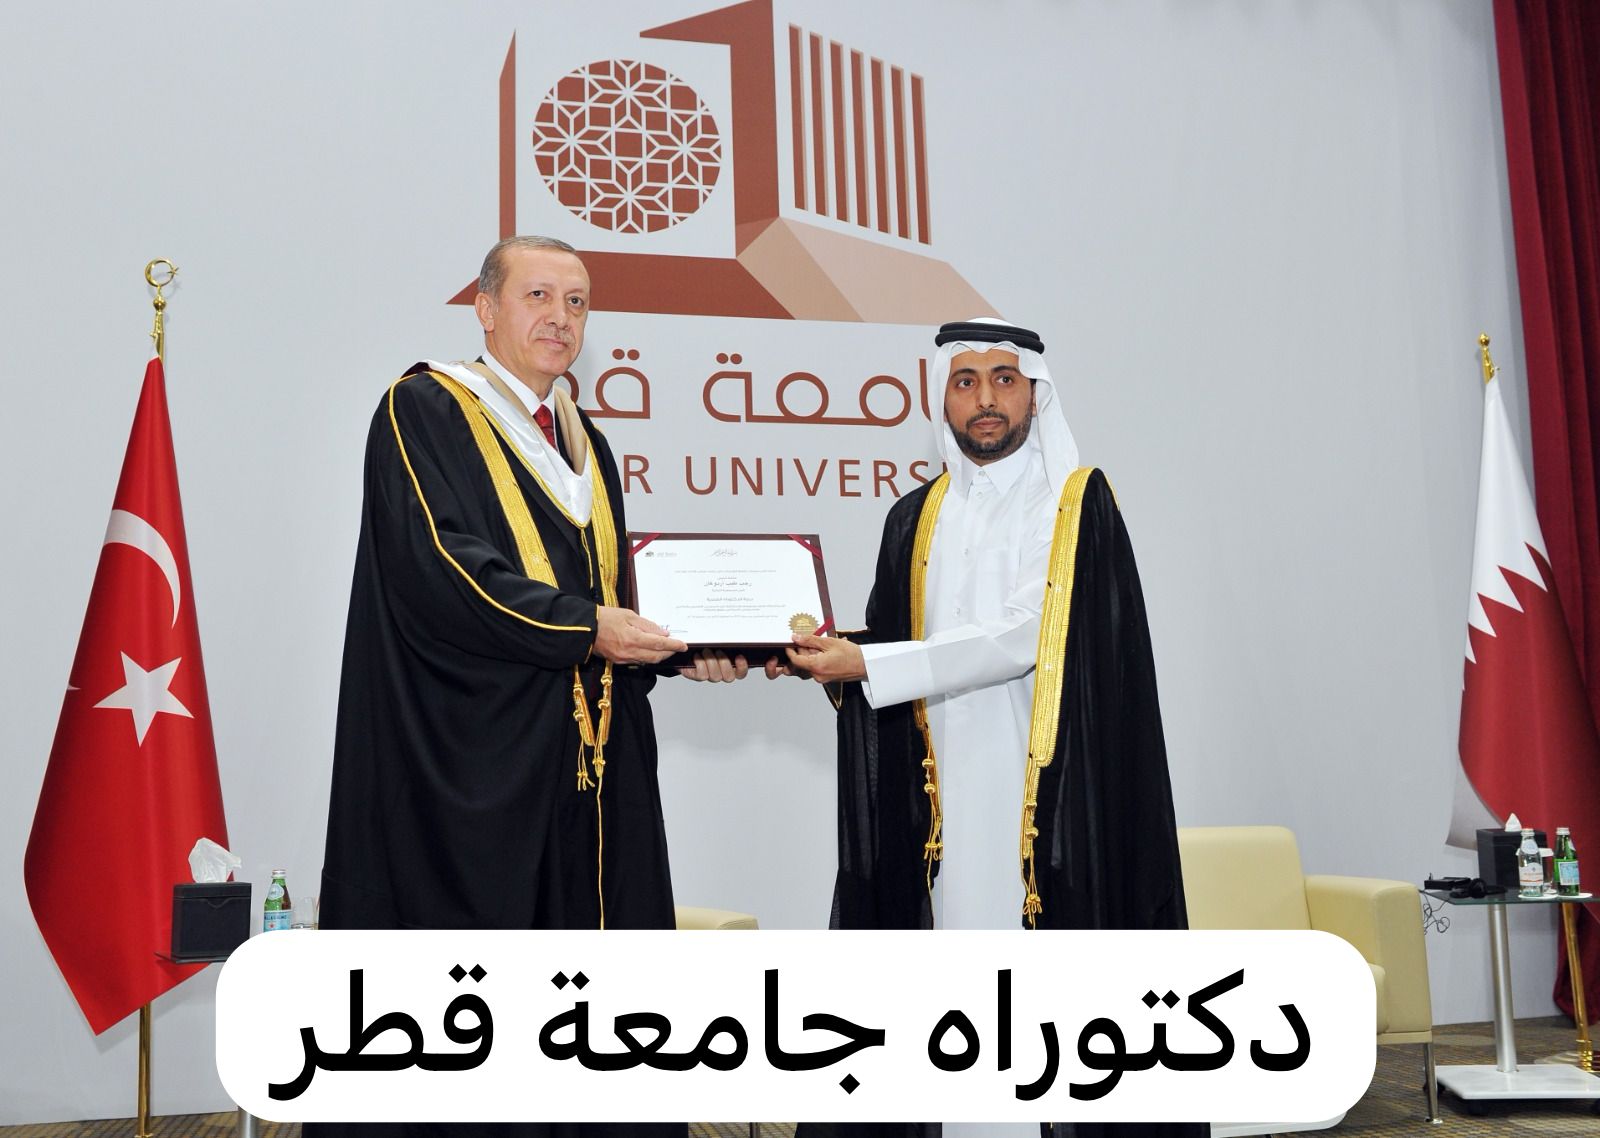 دكتوراه جامعة قطر